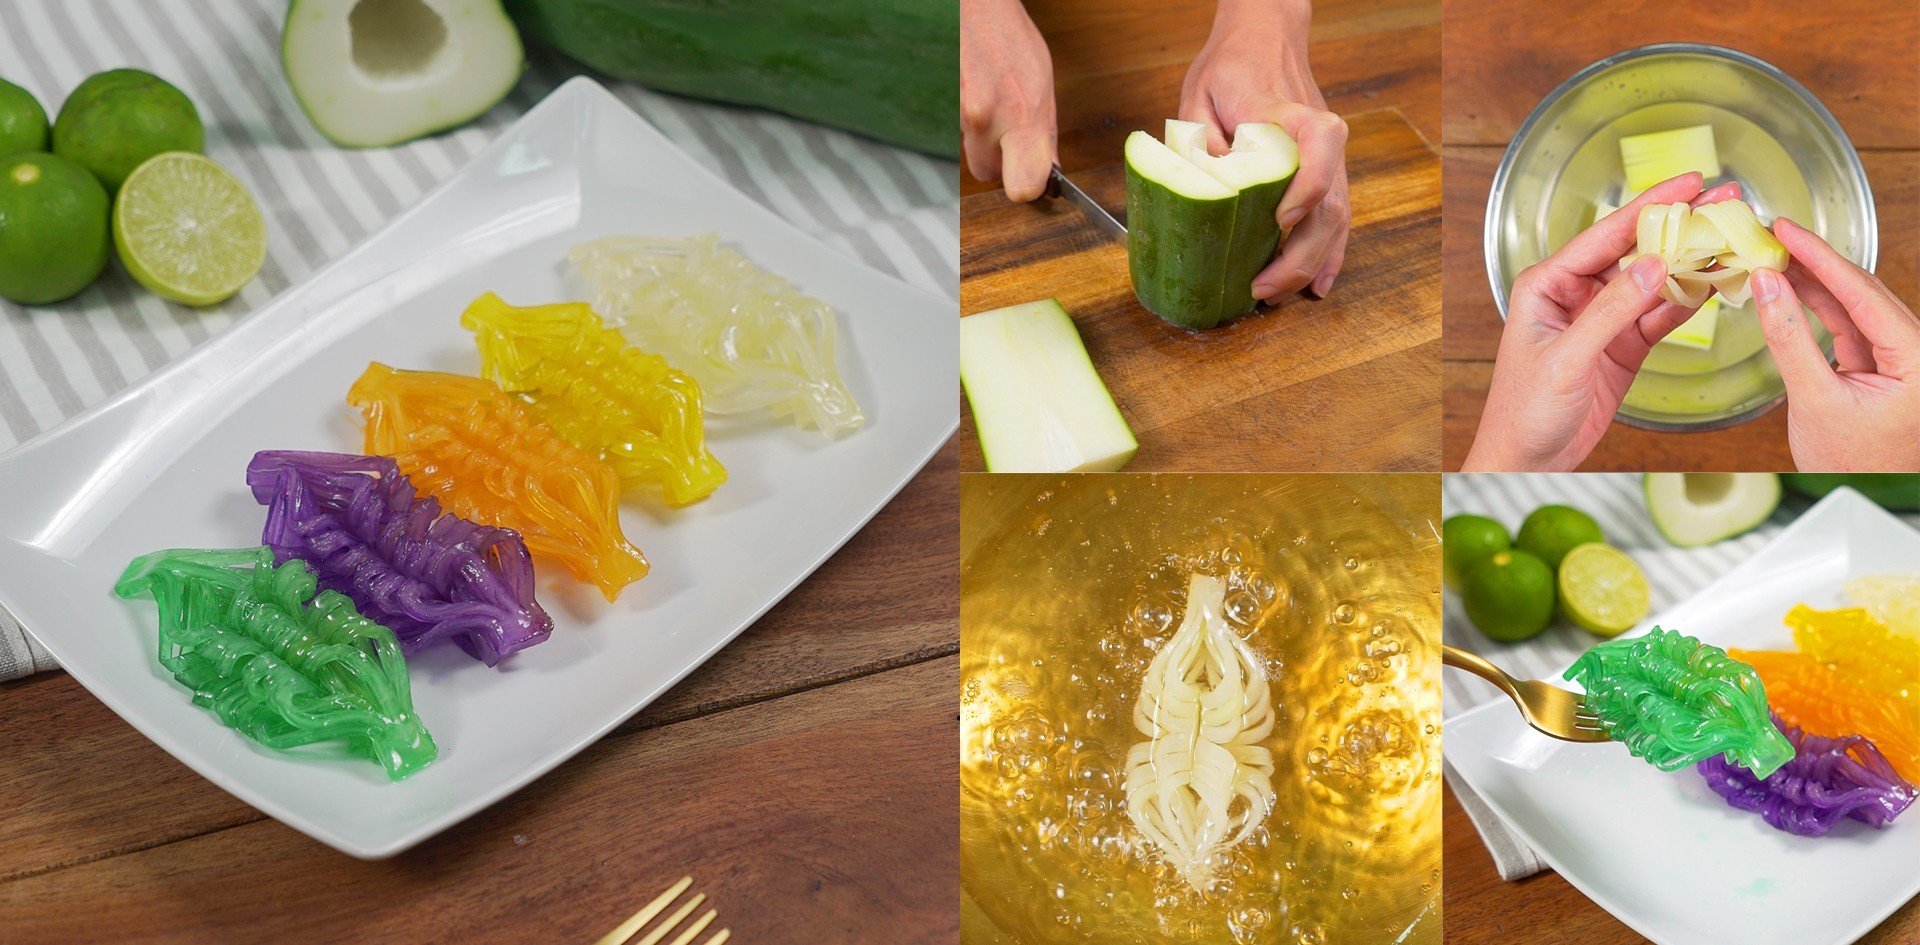 วิธีทำ “มะละกอสานรังแตน” เมนูของหวาน งดงามอย่างไทย ใครเห็นเป็นต้องชอบ เมนูอาหารว่าง